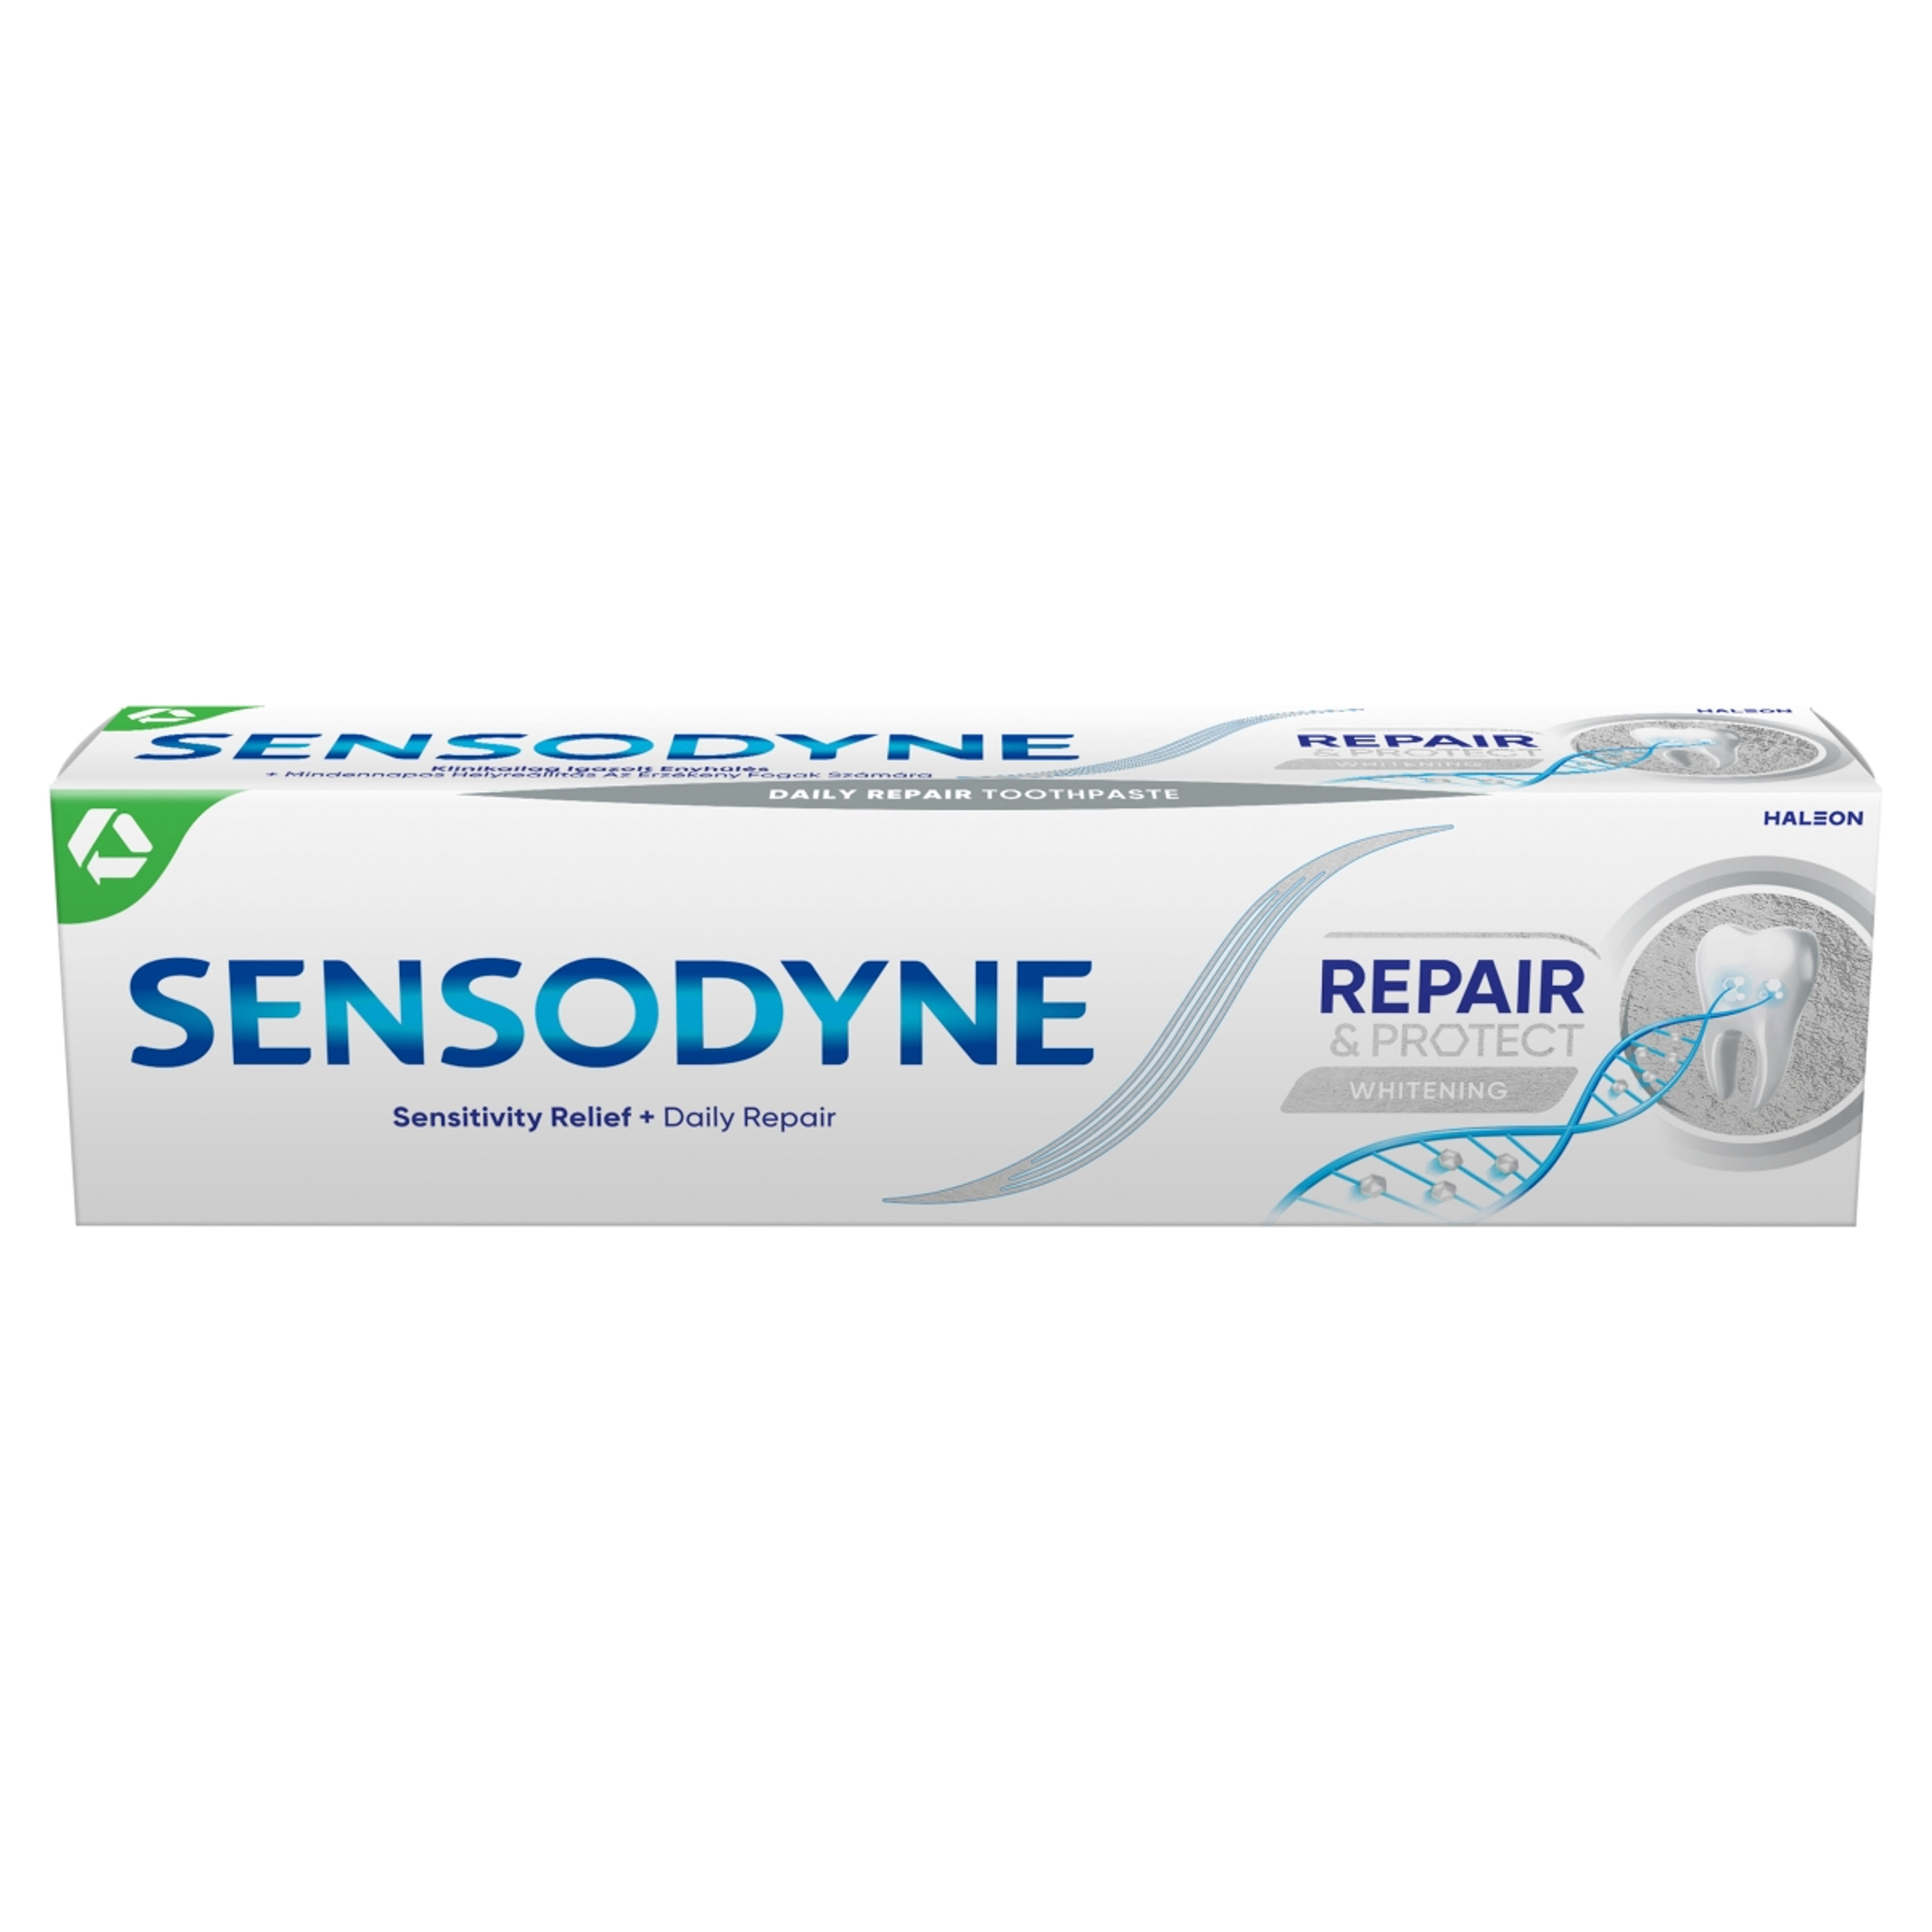 Sensodyne Repair & Protect Whitening fogkrém - 75 ml